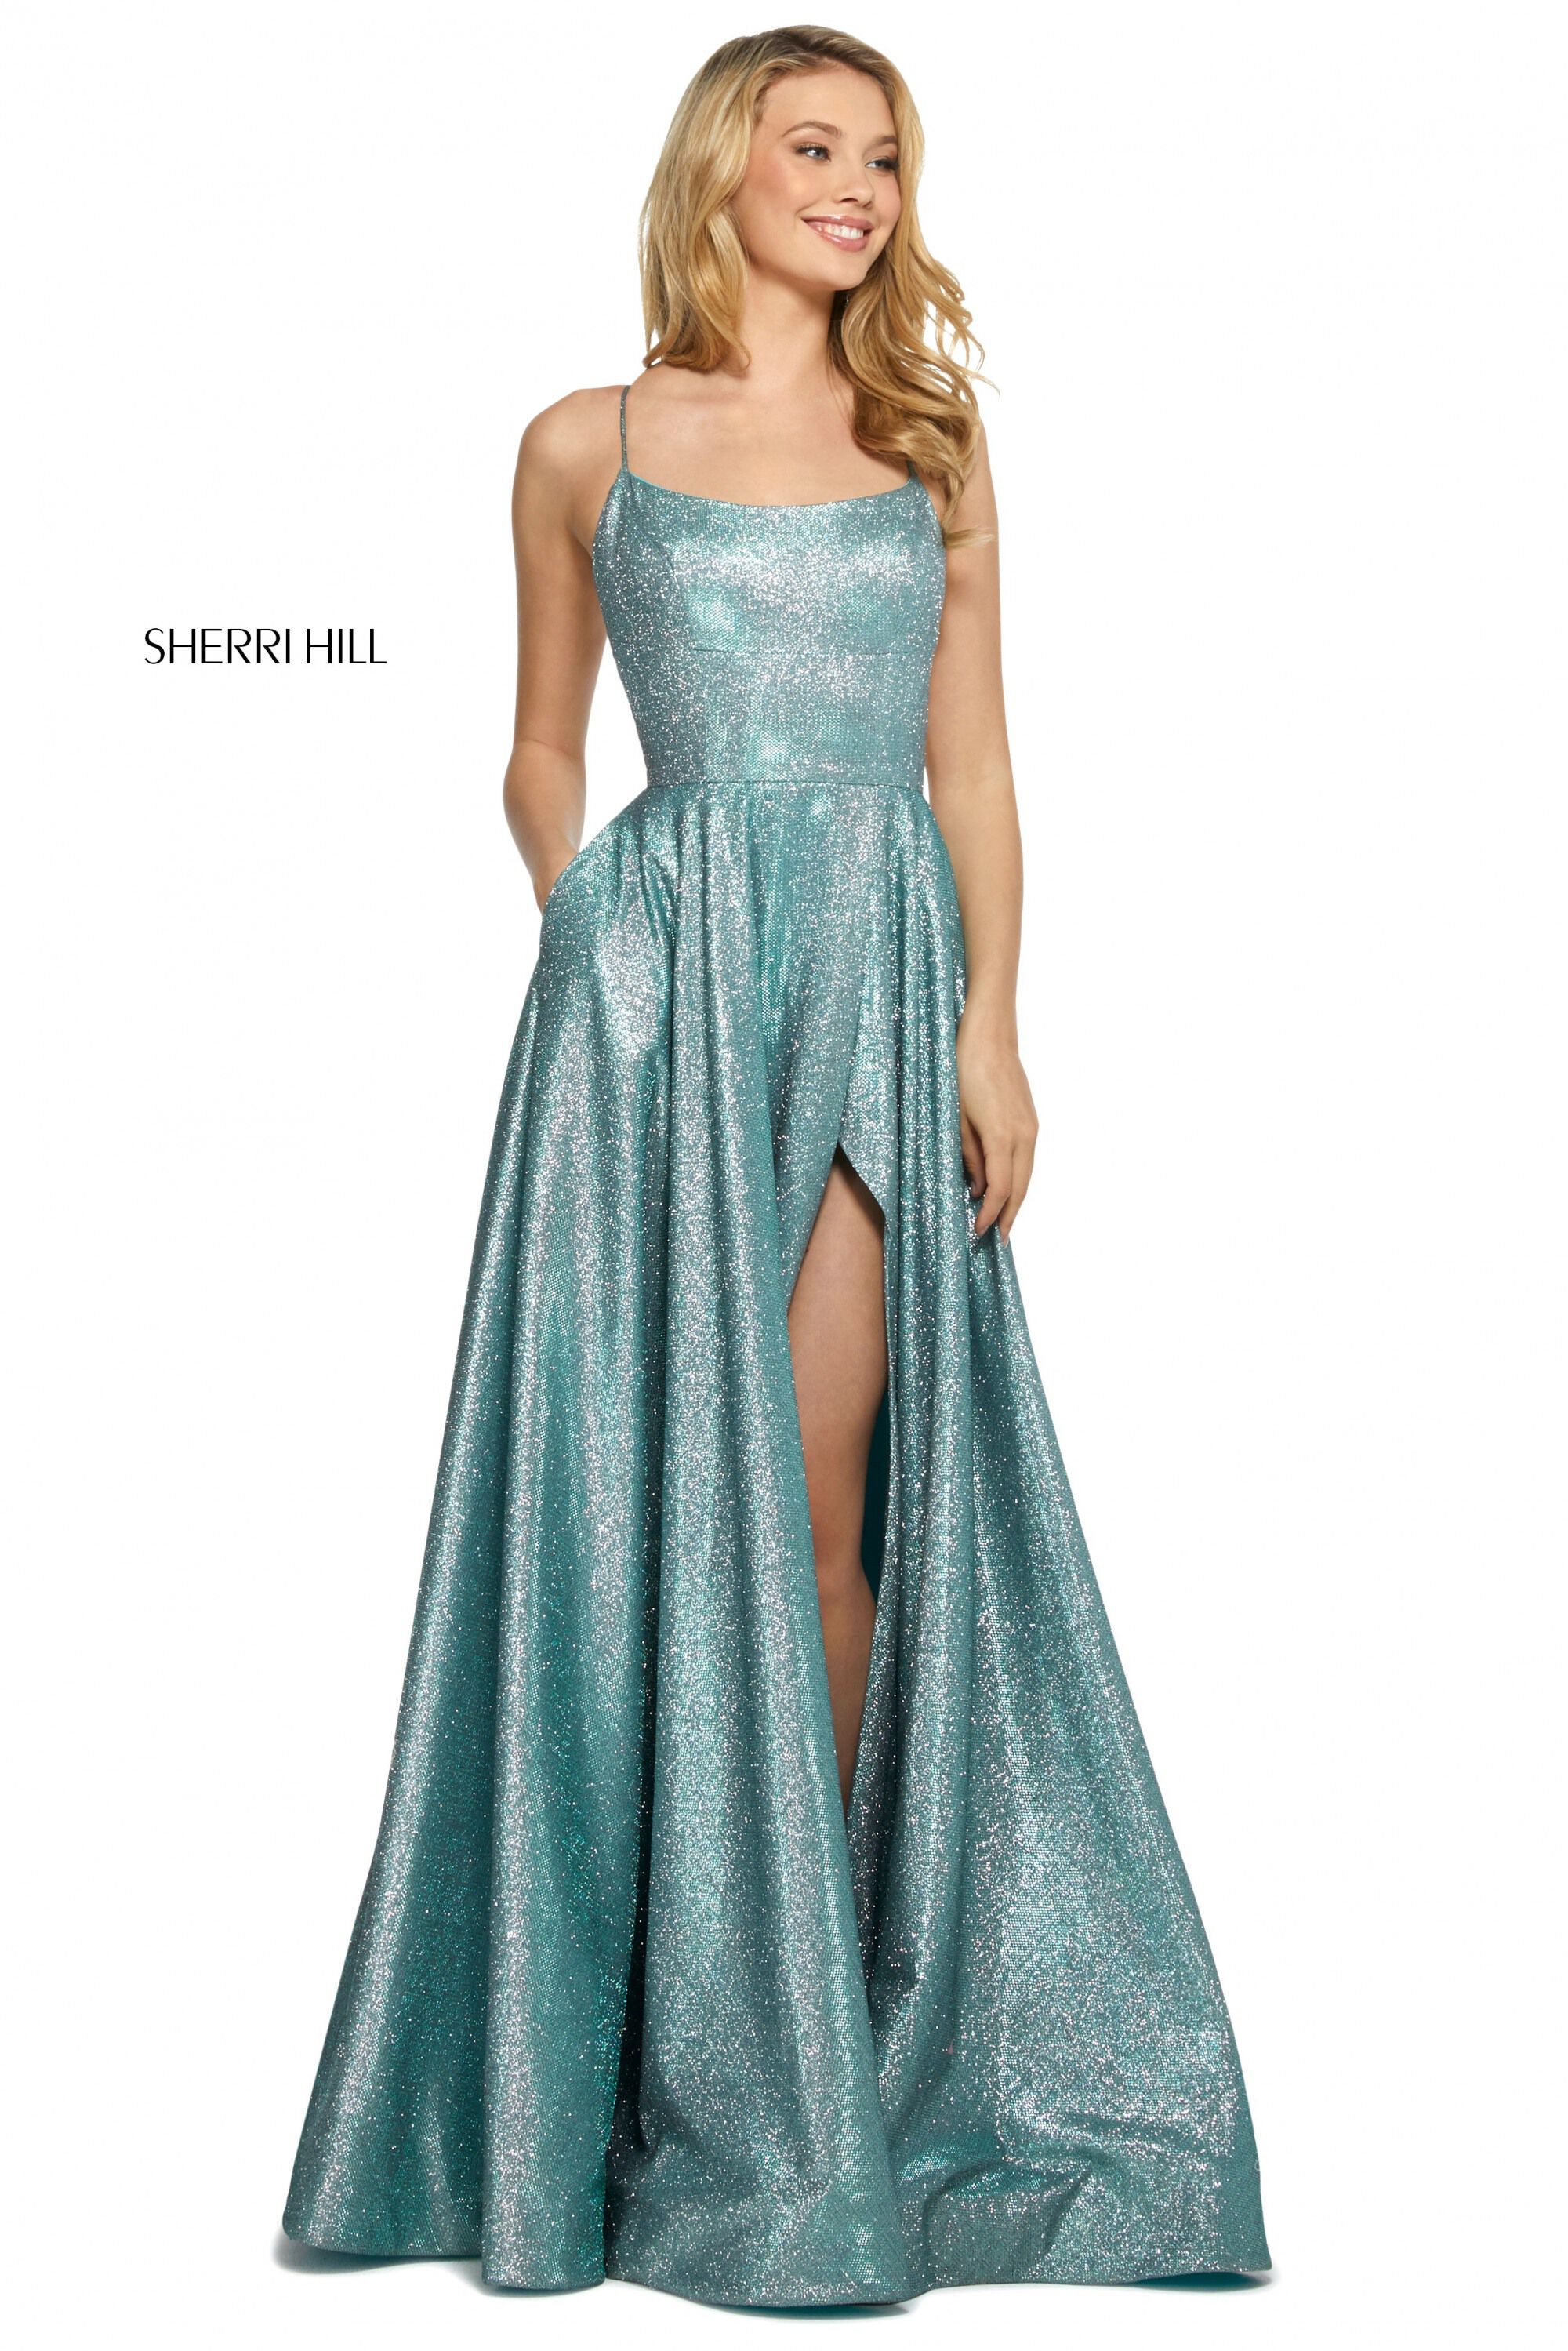 sherri hill teal dress